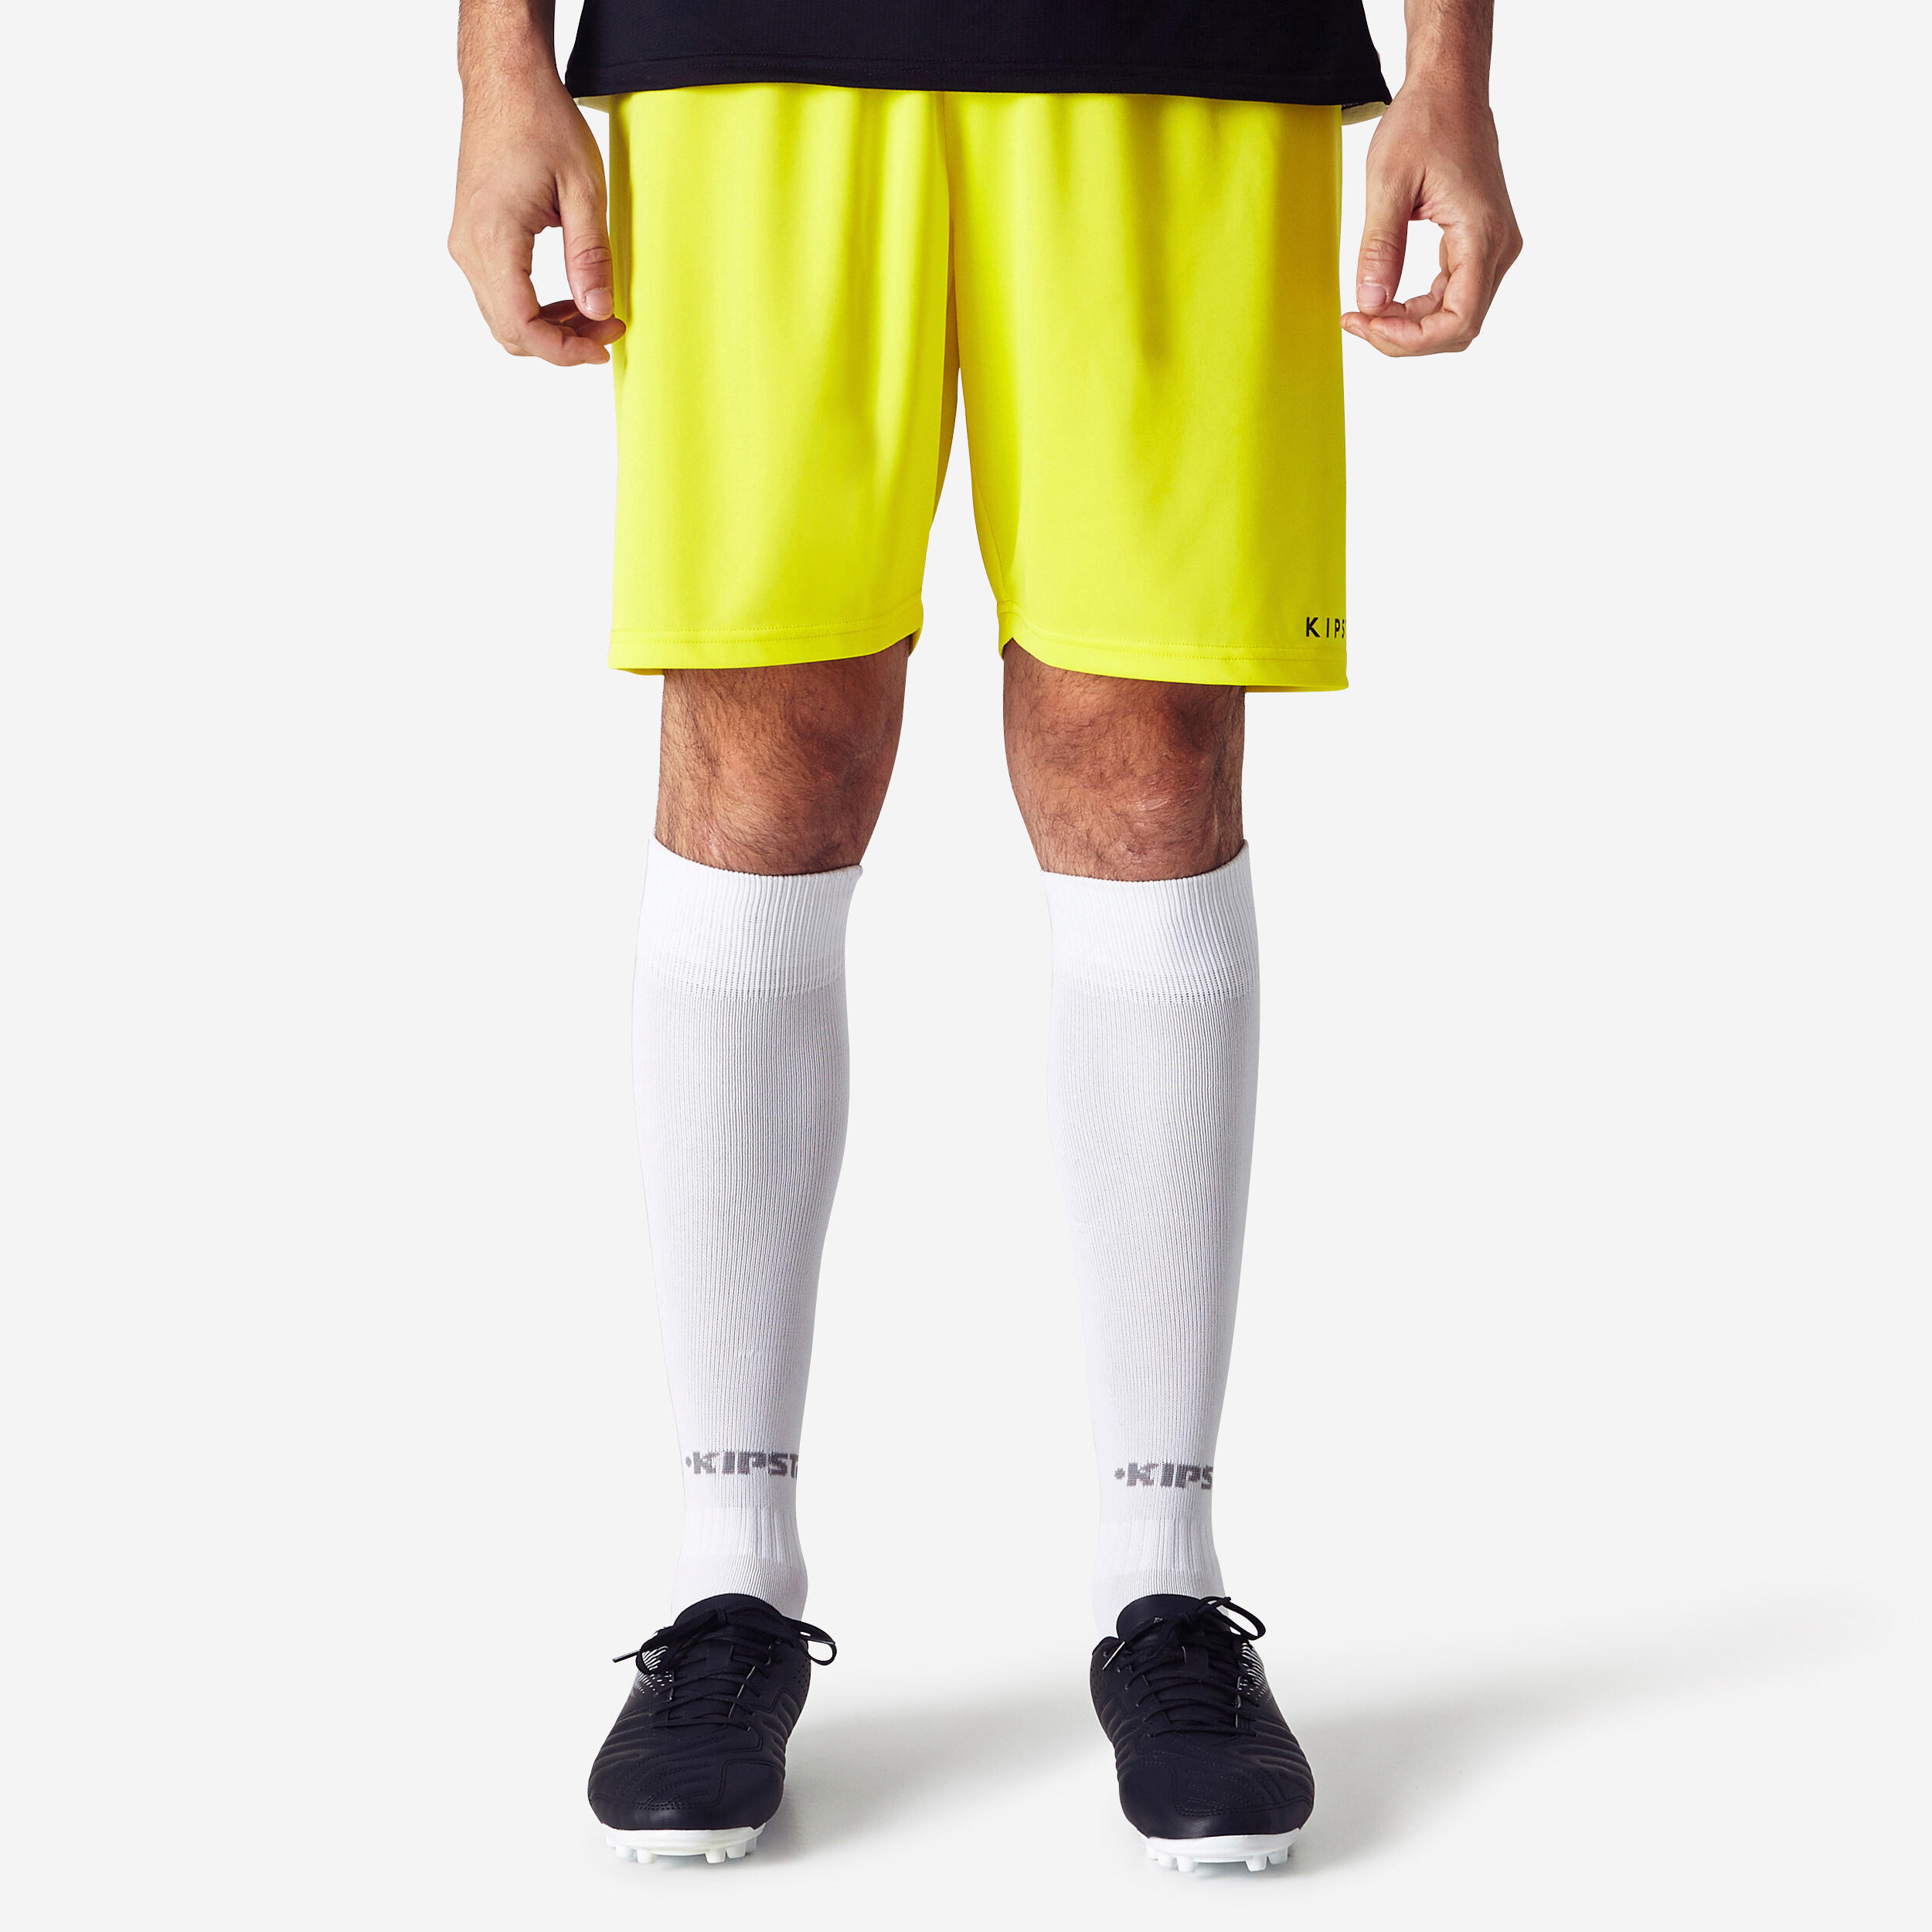 Damen/Herren Fussball Shorts - Essentiel gelb